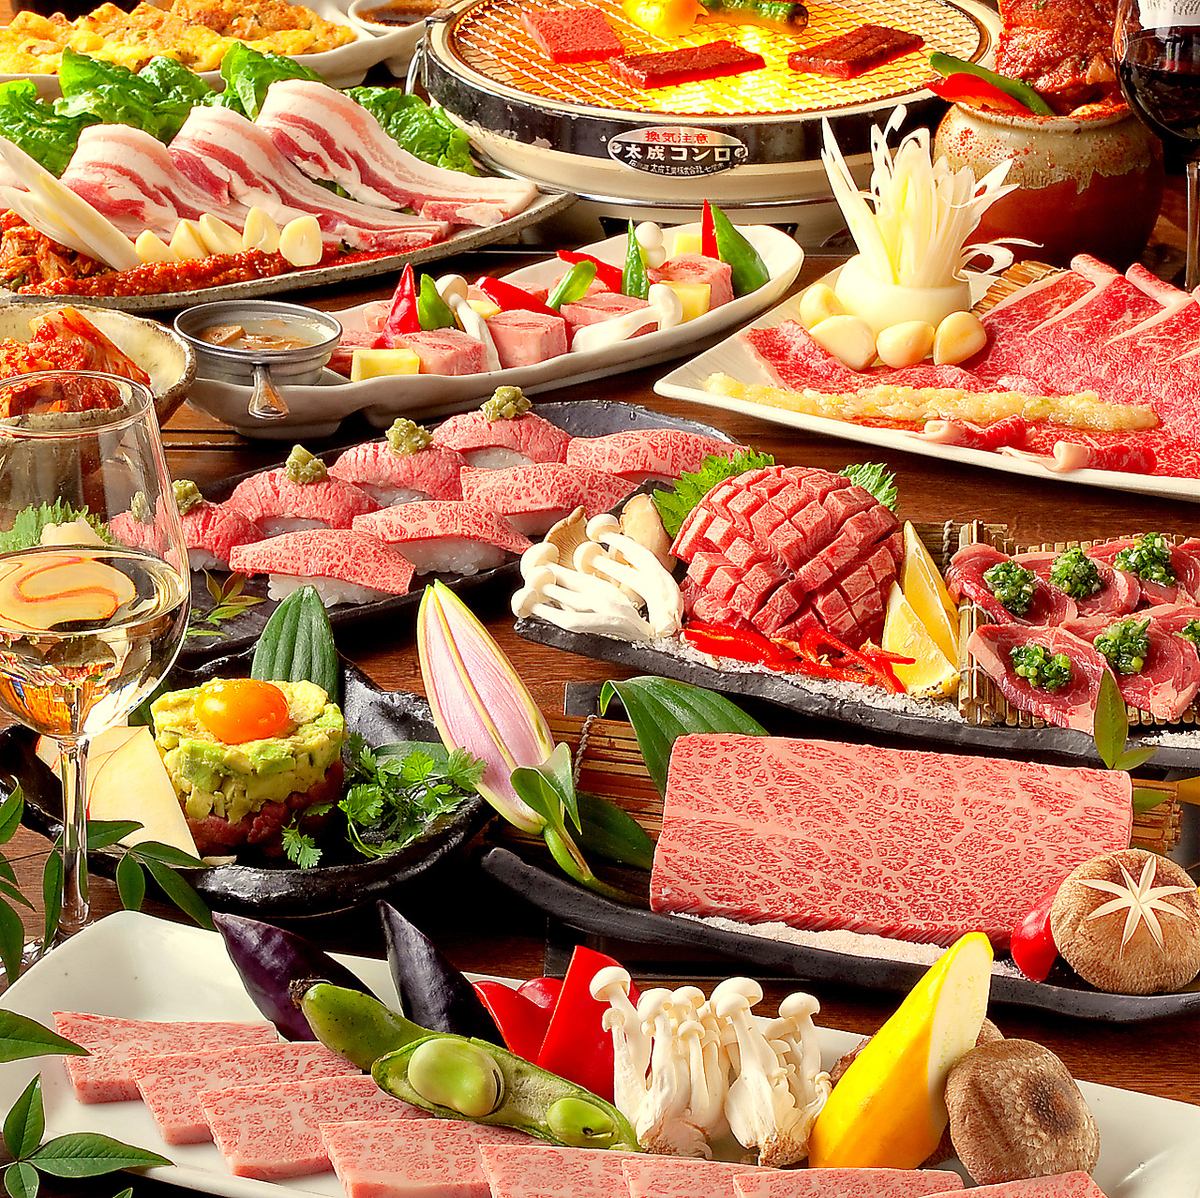 肉类寿司和其他特色菜肴很多，其中包括熟悉烤肉35年的主厨精心挑选的黑毛和牛。